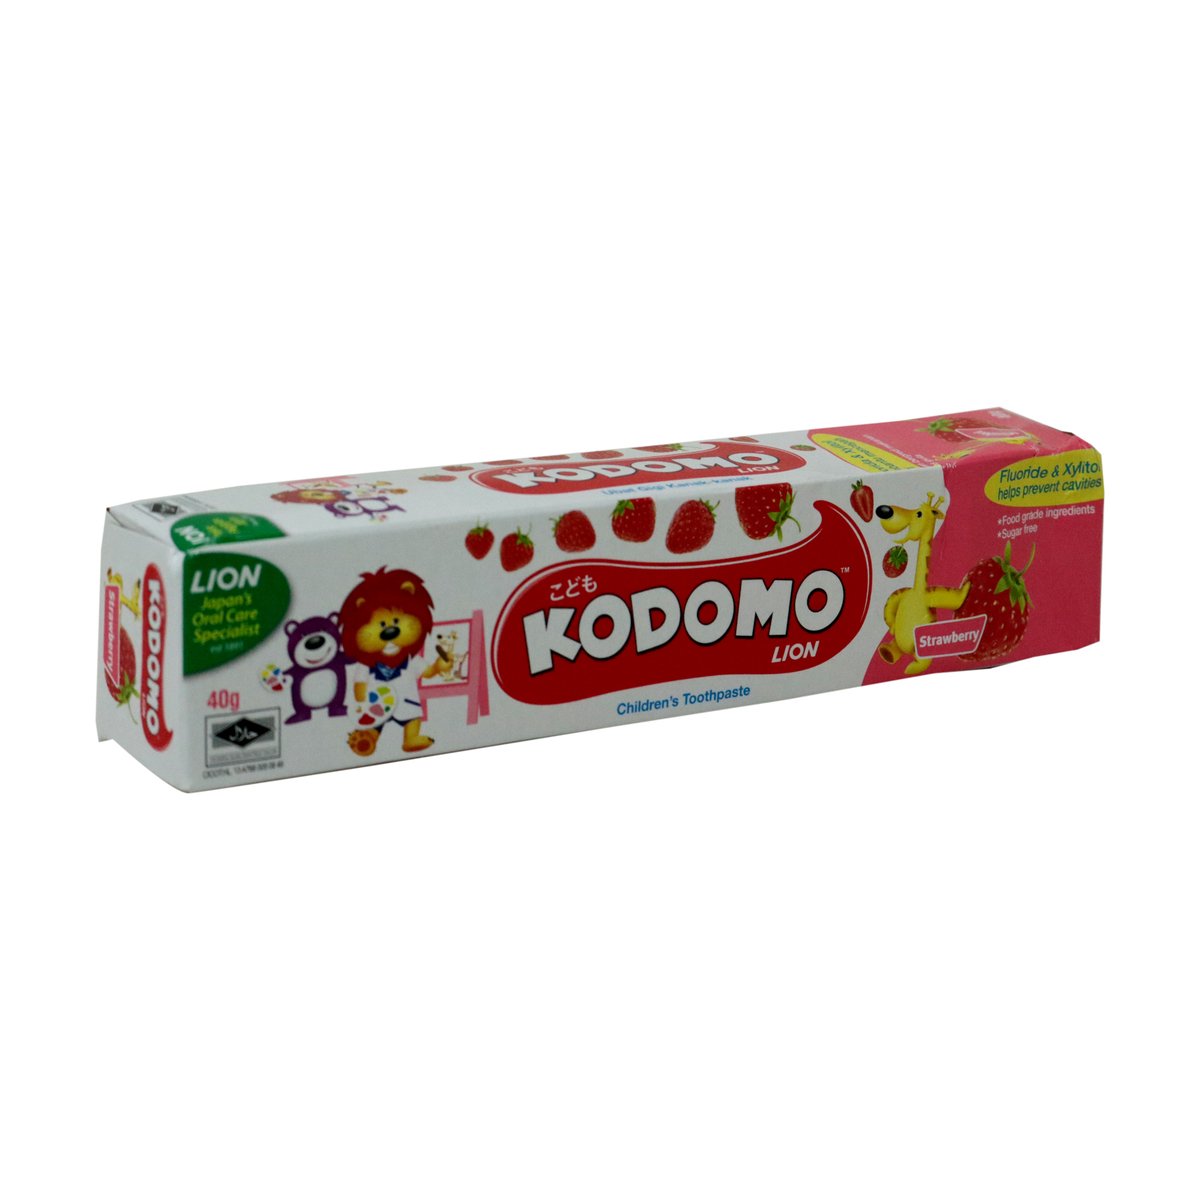 Kodomo Tooth Paste Strawberry 40g